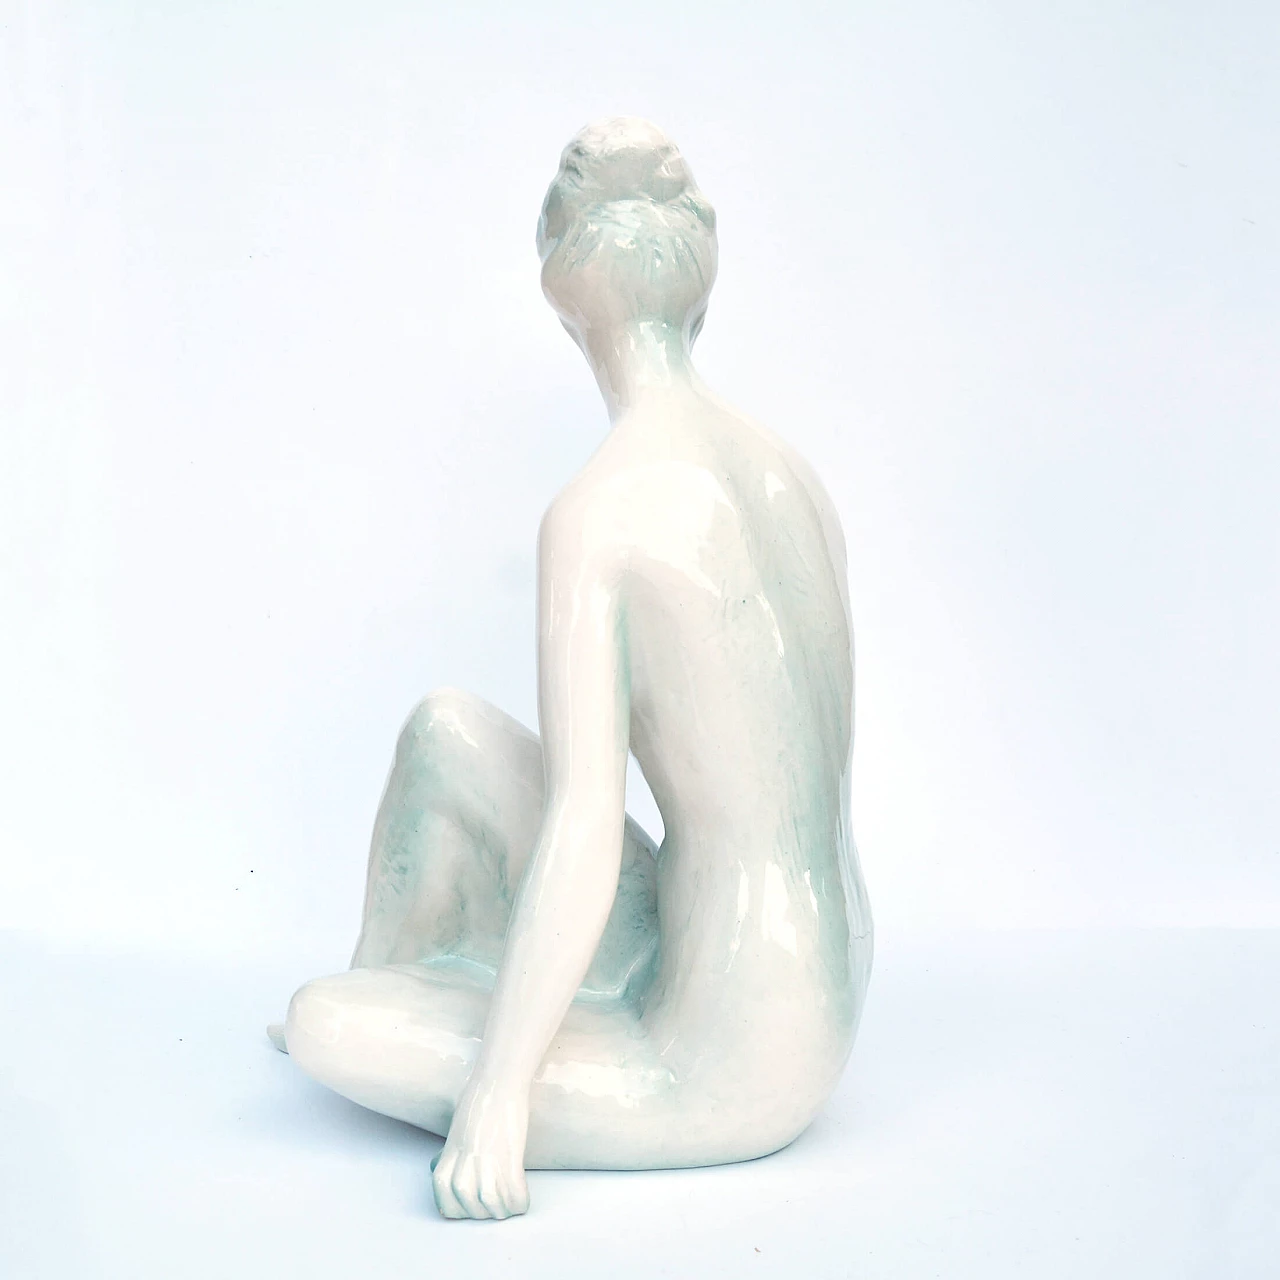 Female nude sculpture by Kokrda Jihokera Bechyně, 1960s 8